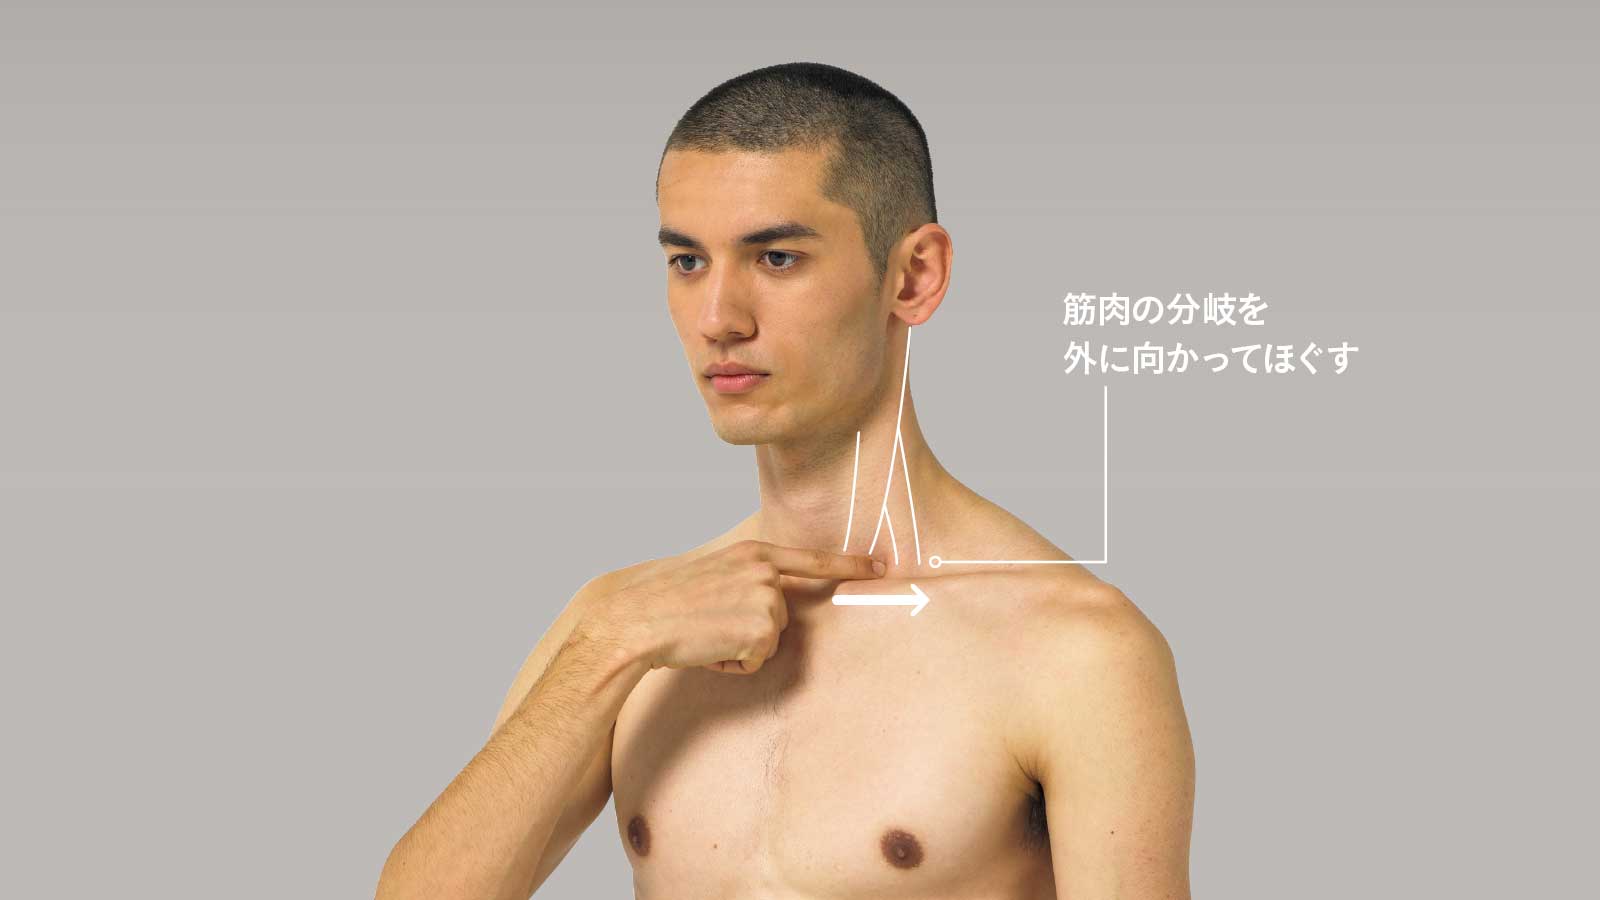 胸鎖乳突筋の付着部をほぐす 筋膜セラピー 理学療法士 半田 学さん